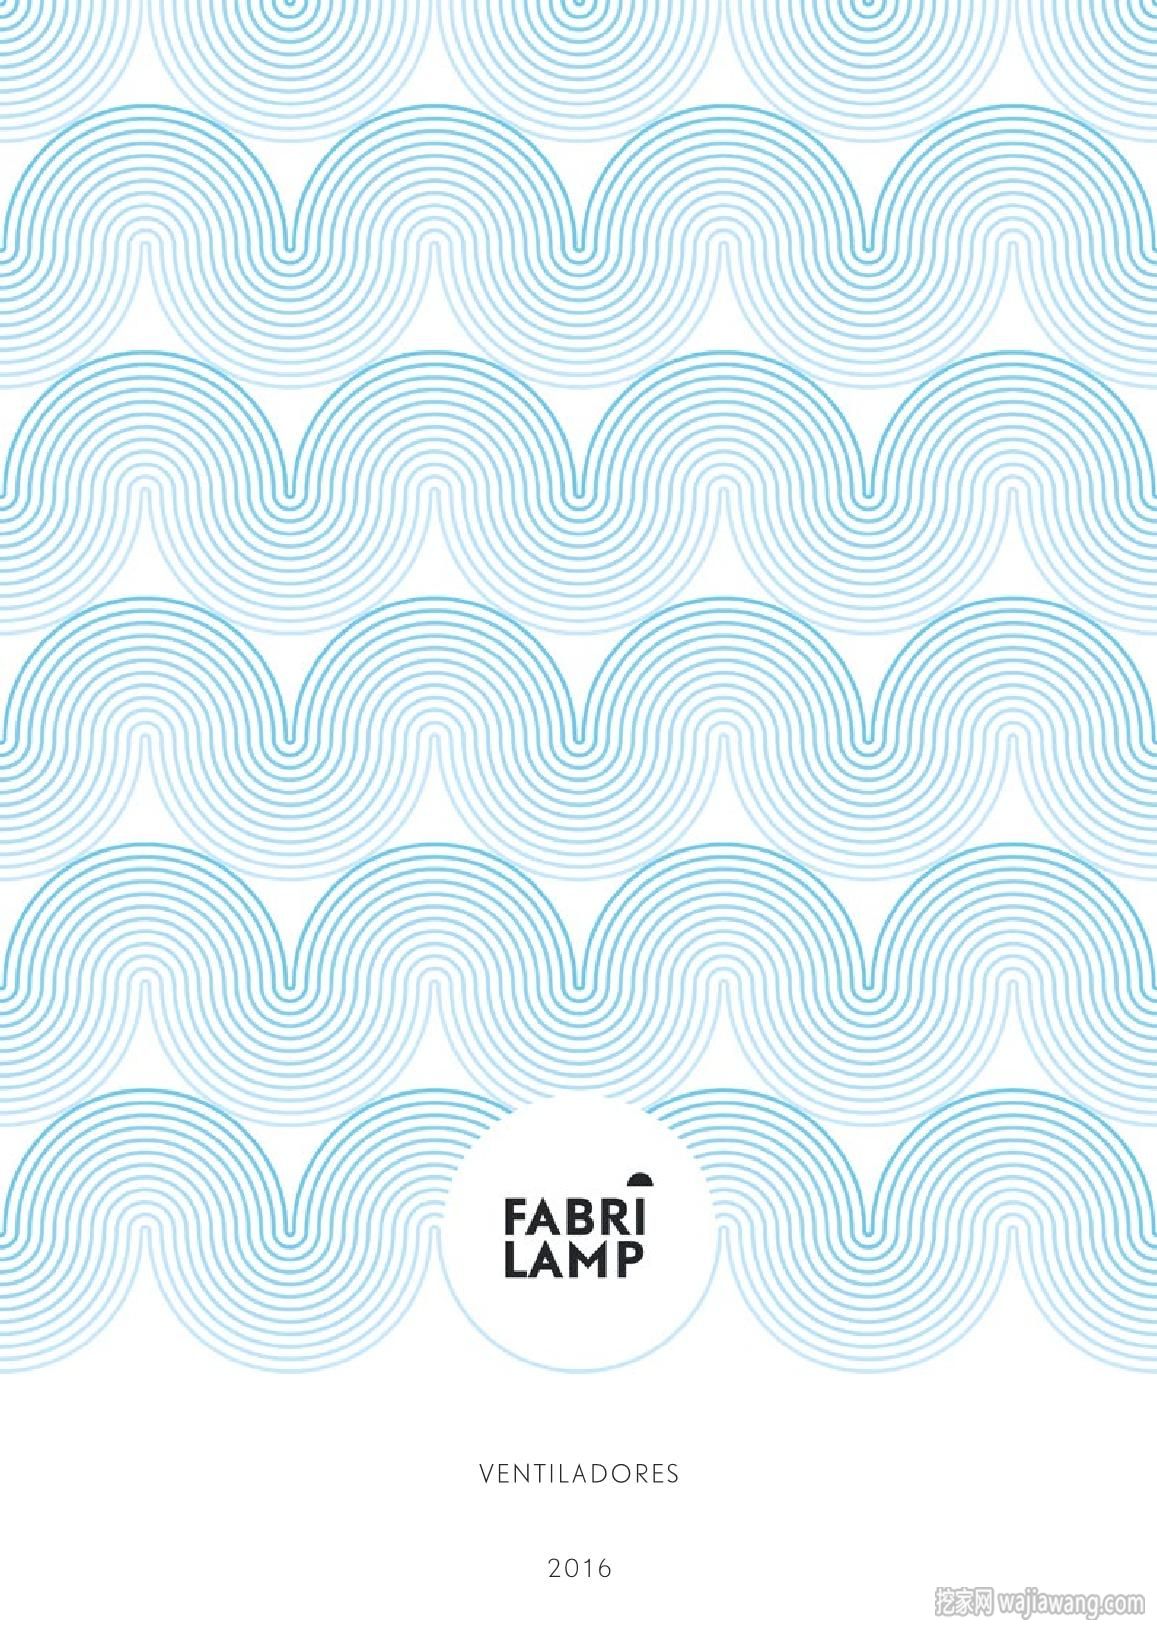 灯饰设计 Fabrilamp 2016年欧美室内风扇灯设计图(图)